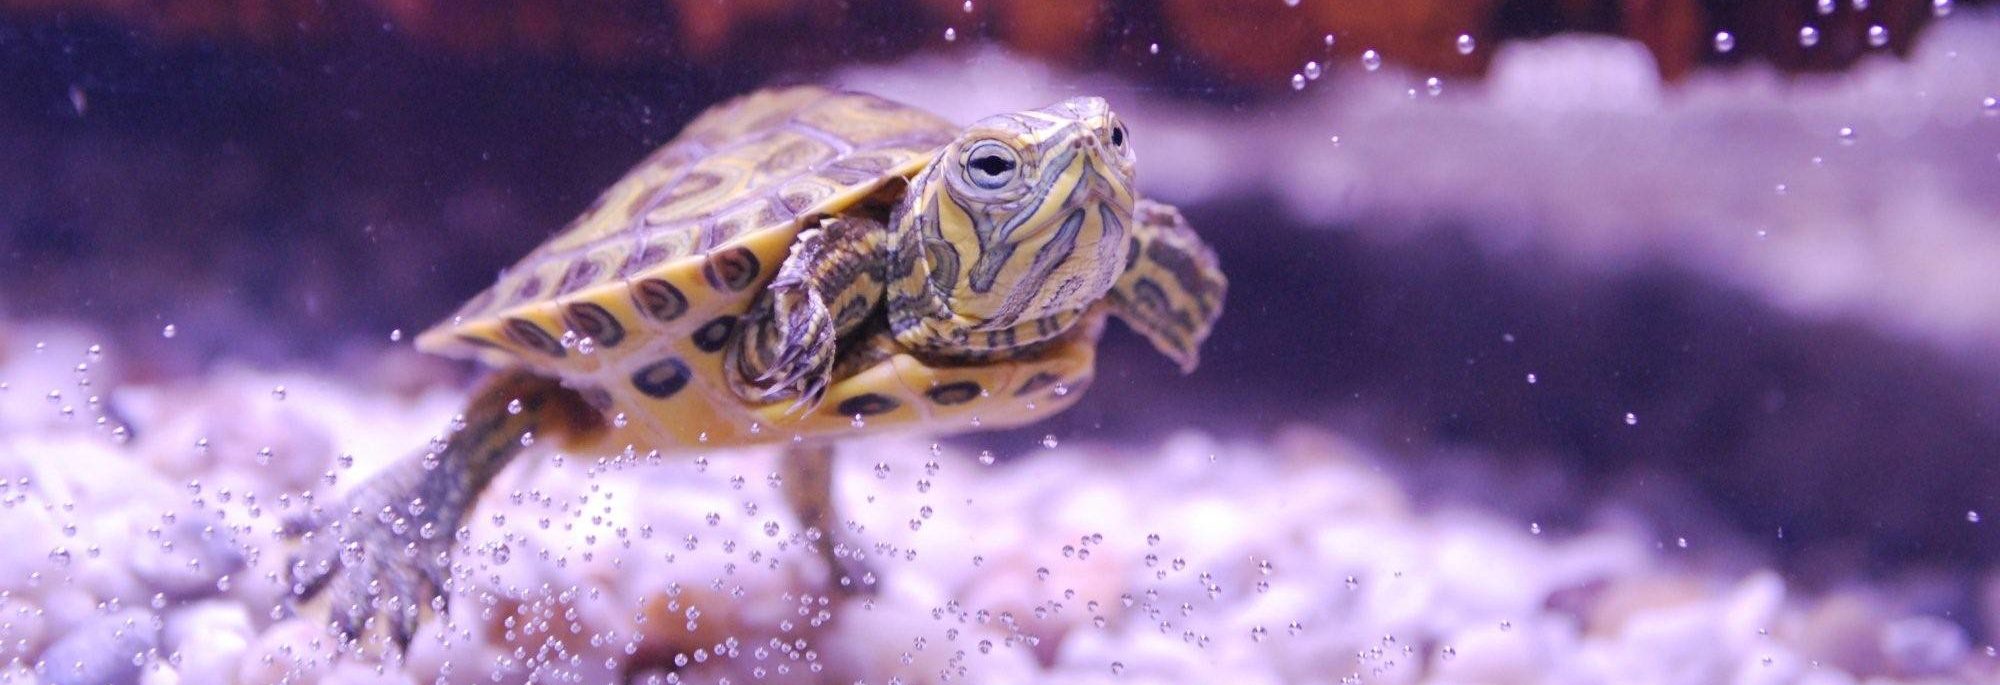 водные черепахи